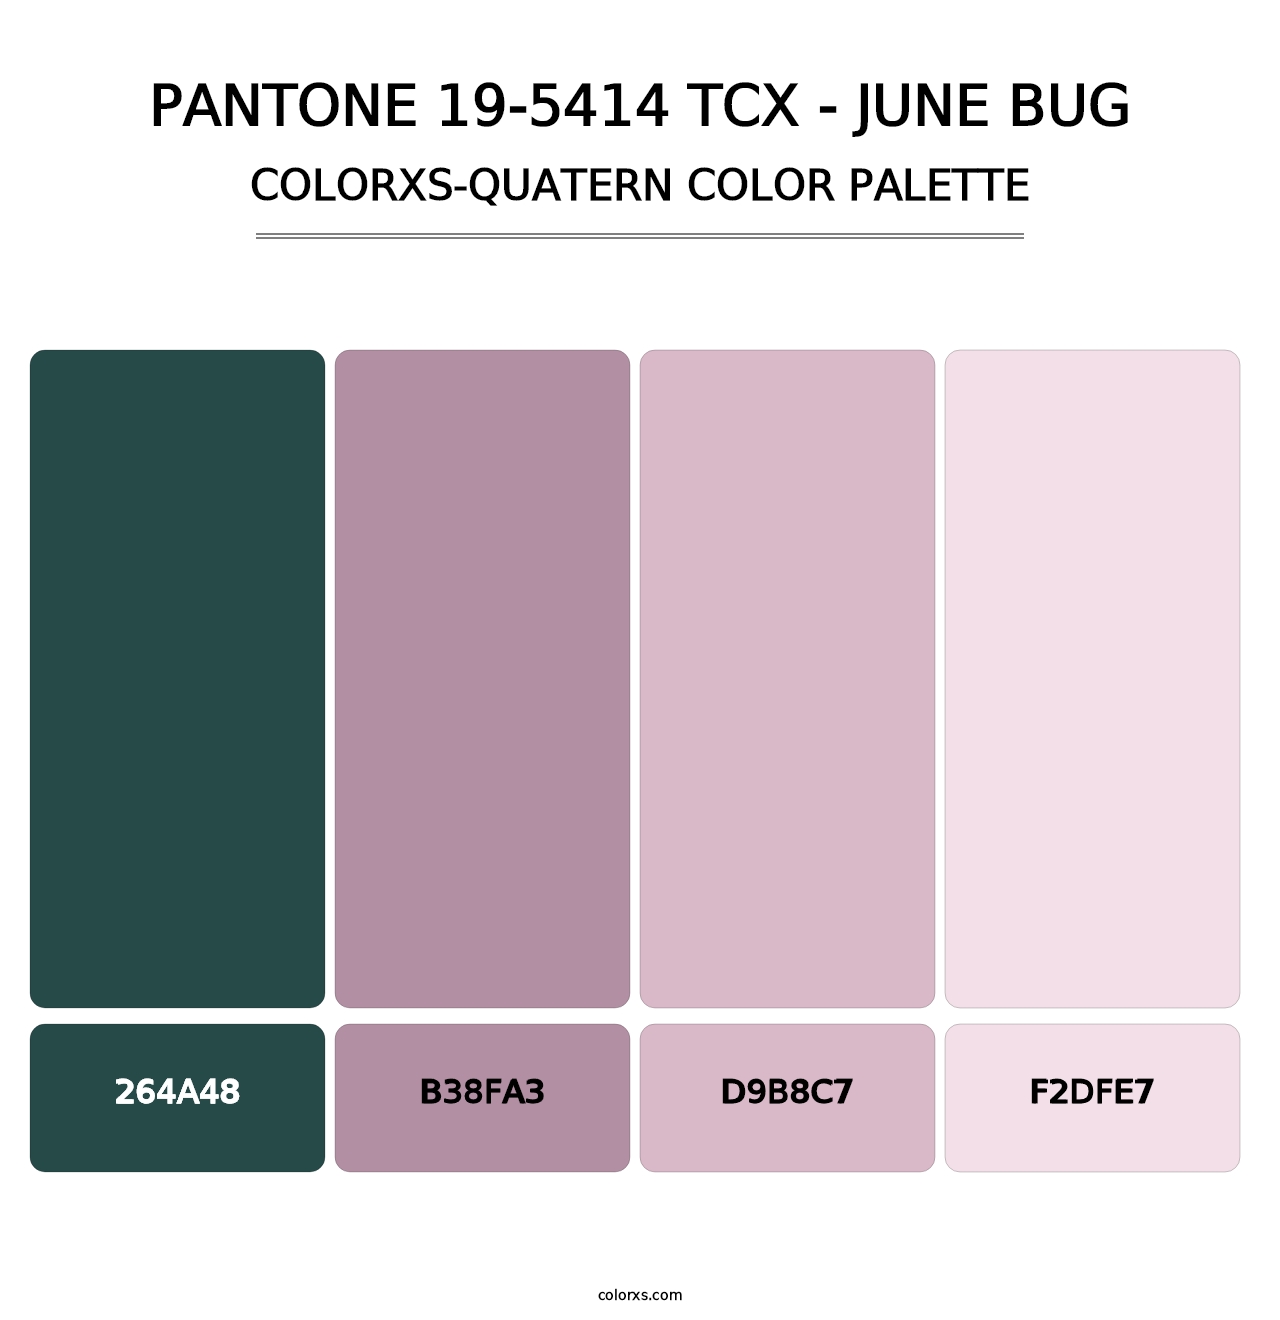 PANTONE 19-5414 TCX - June Bug - Colorxs Quatern Palette